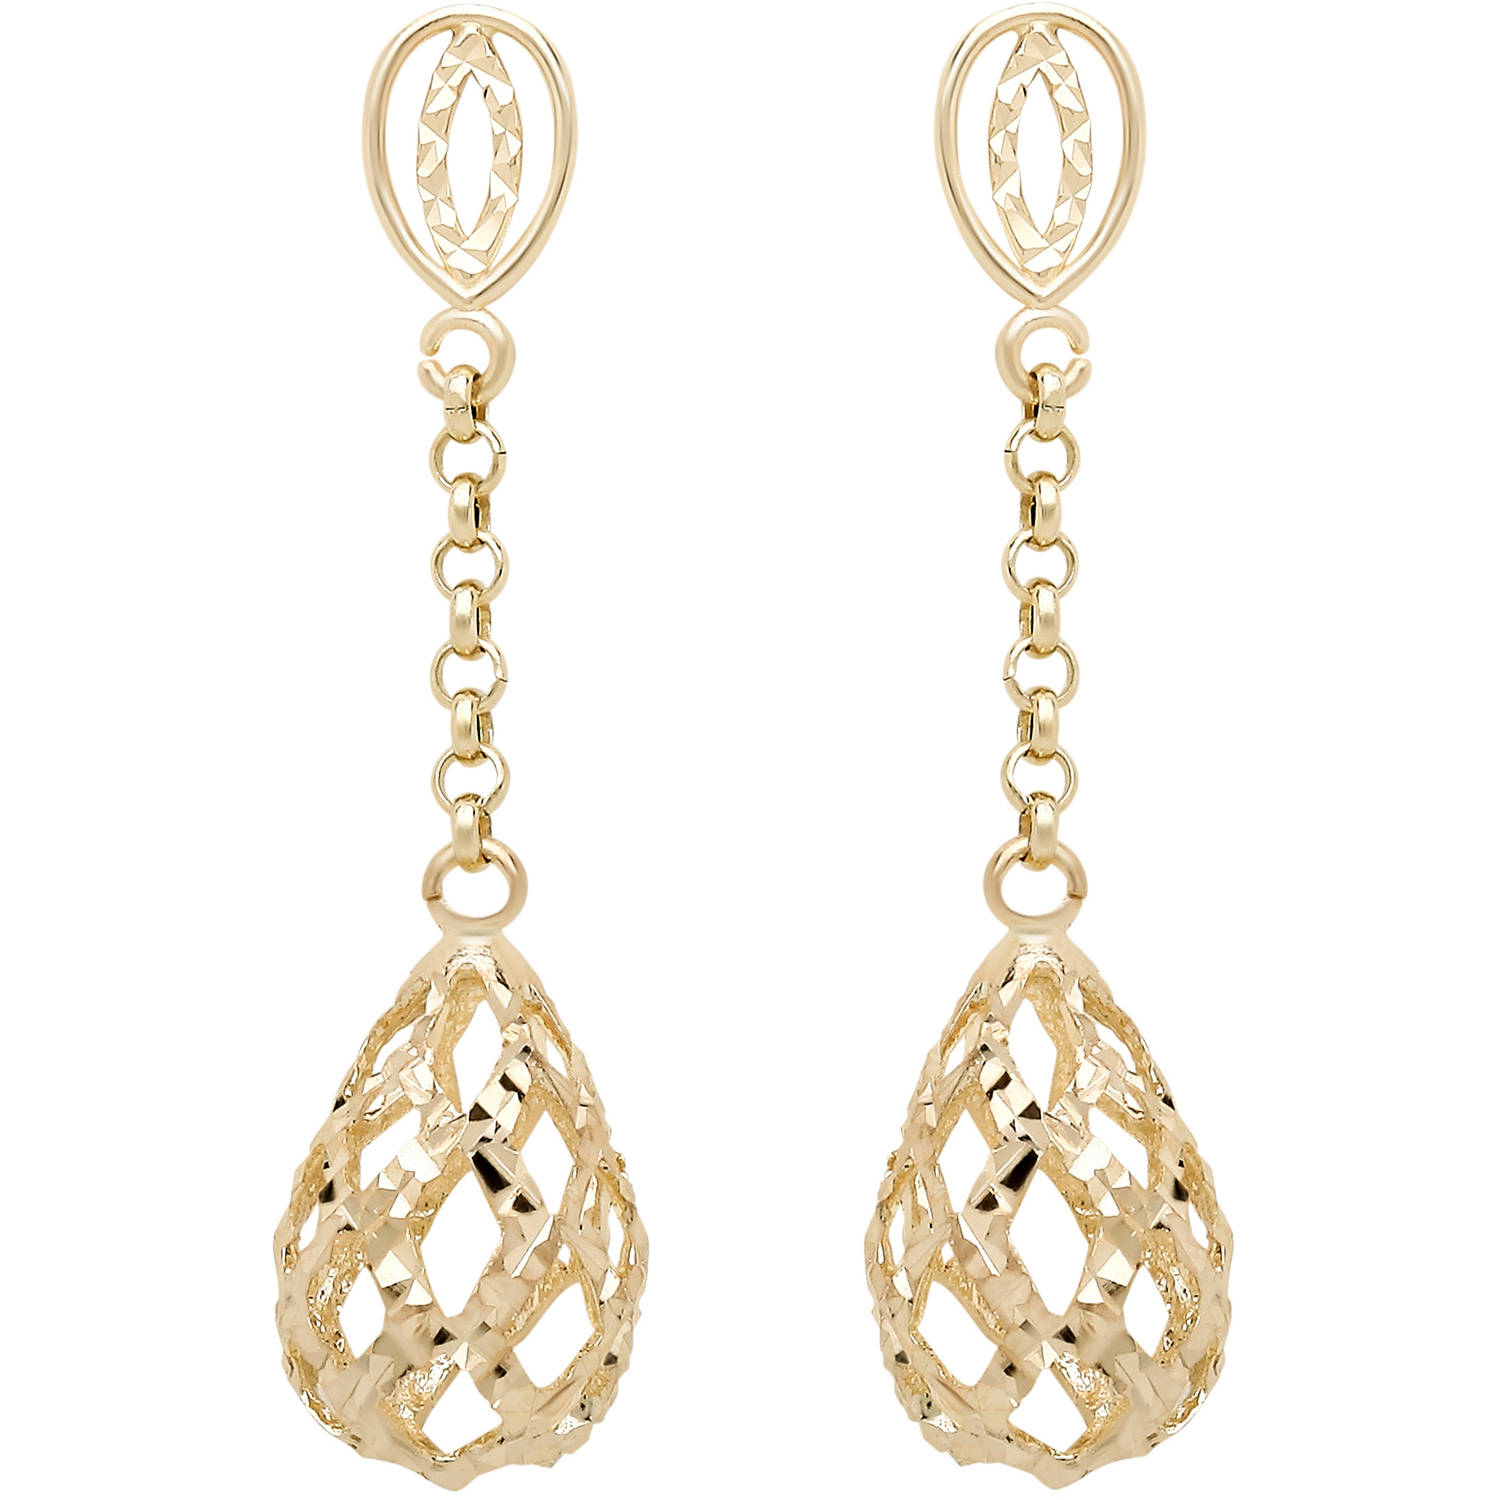 gold dangle earrings simply gold 10kt yellow gold puffed teardrop dangle earrings BEJMPLE